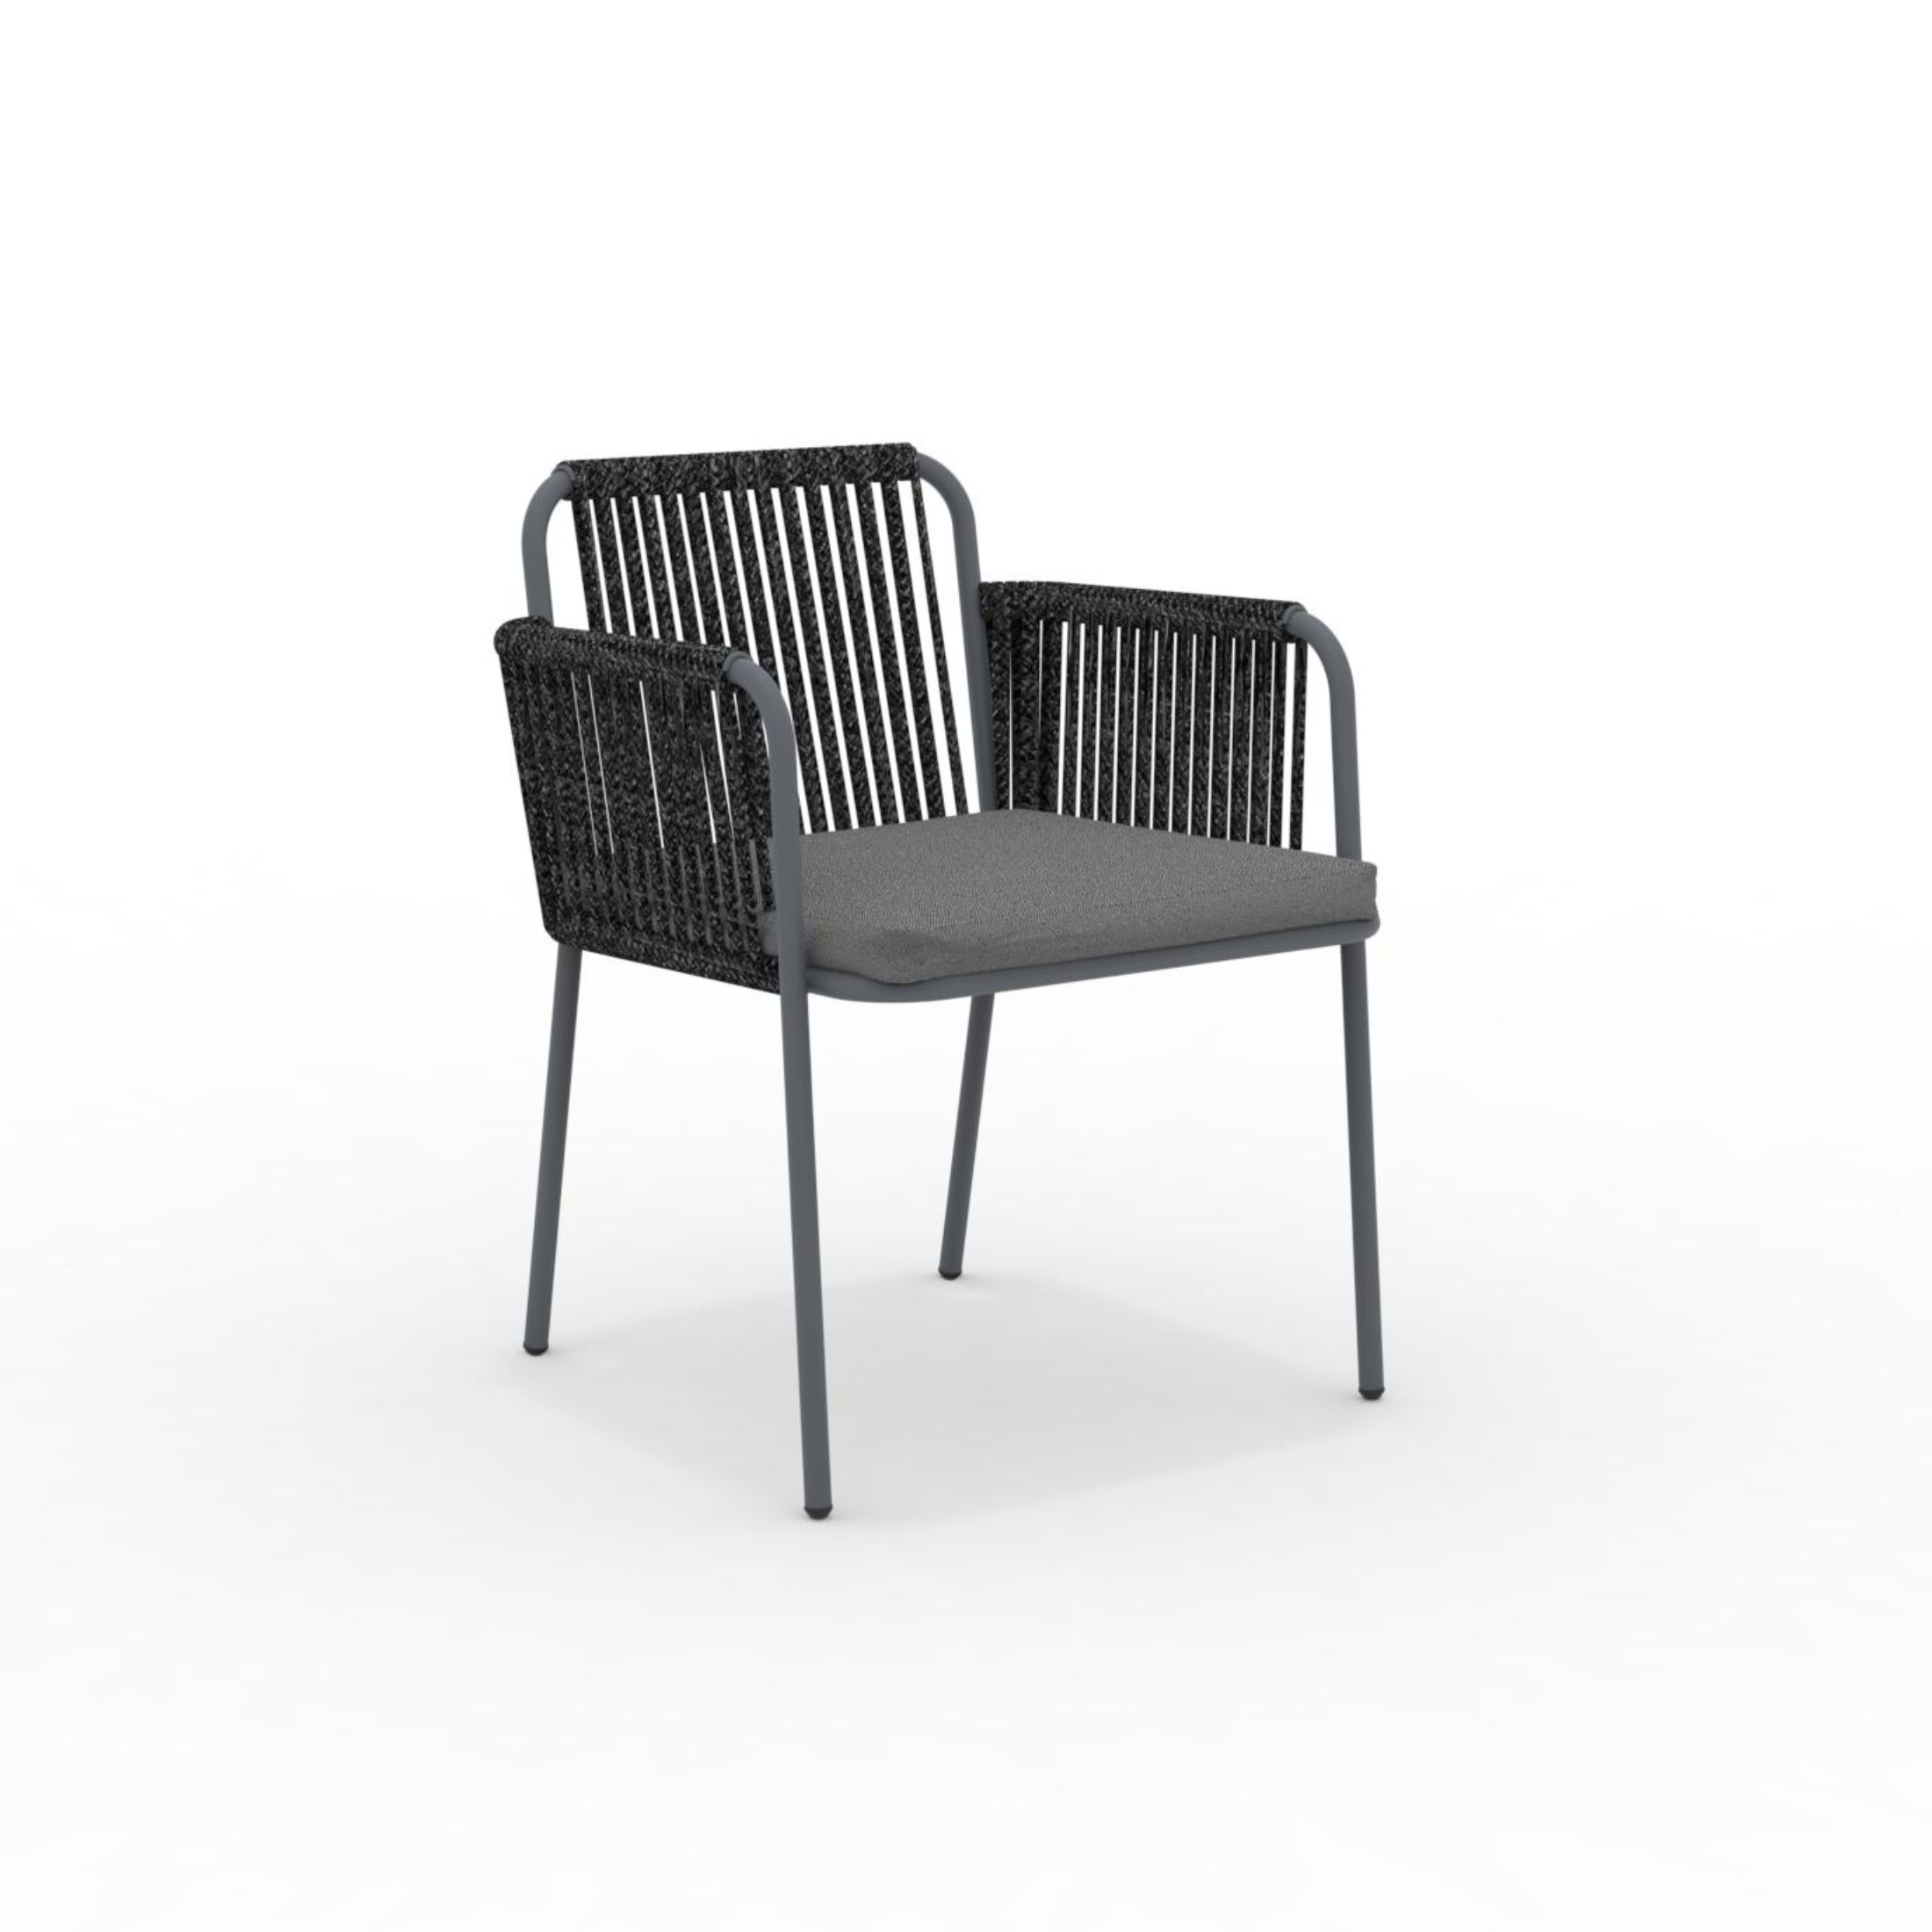 Ensemble fauteuil lounge avec coussin et dossier en corde "Key West" empilable 62x66 cm 85h